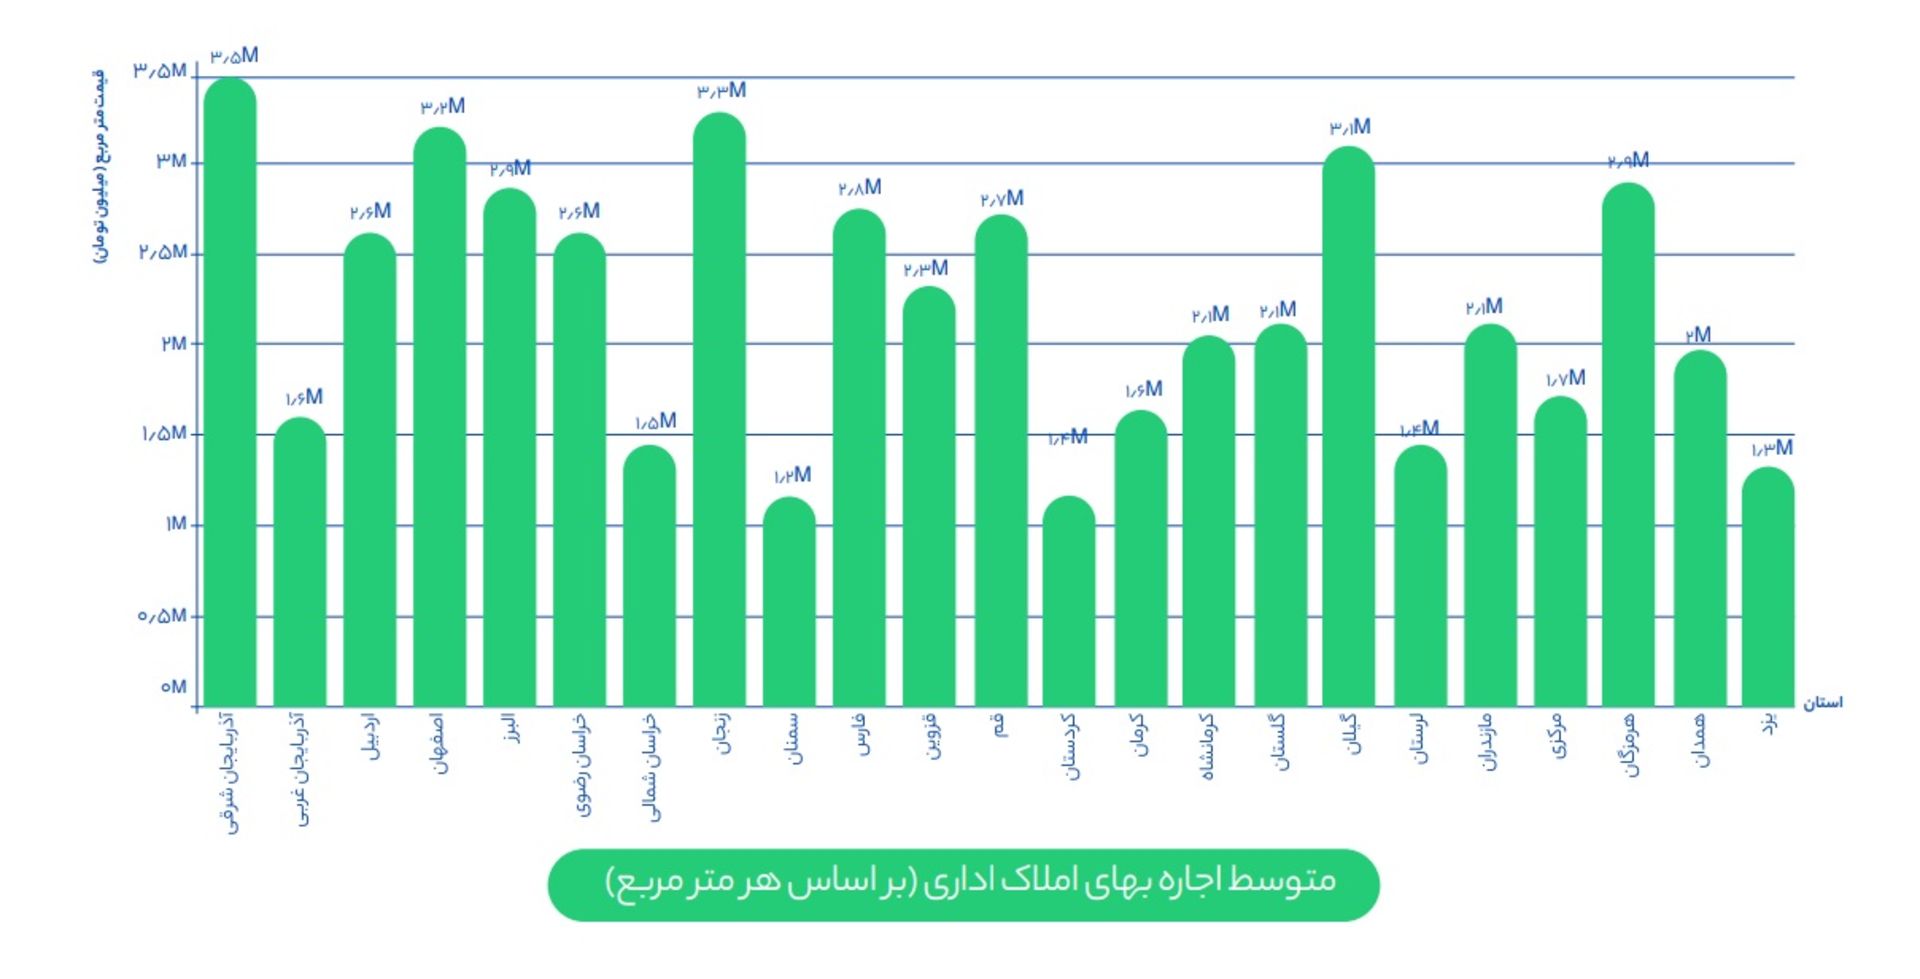 نمودار شیپور از متوسط هزینه اجاره املاک اداری در استان های کشور